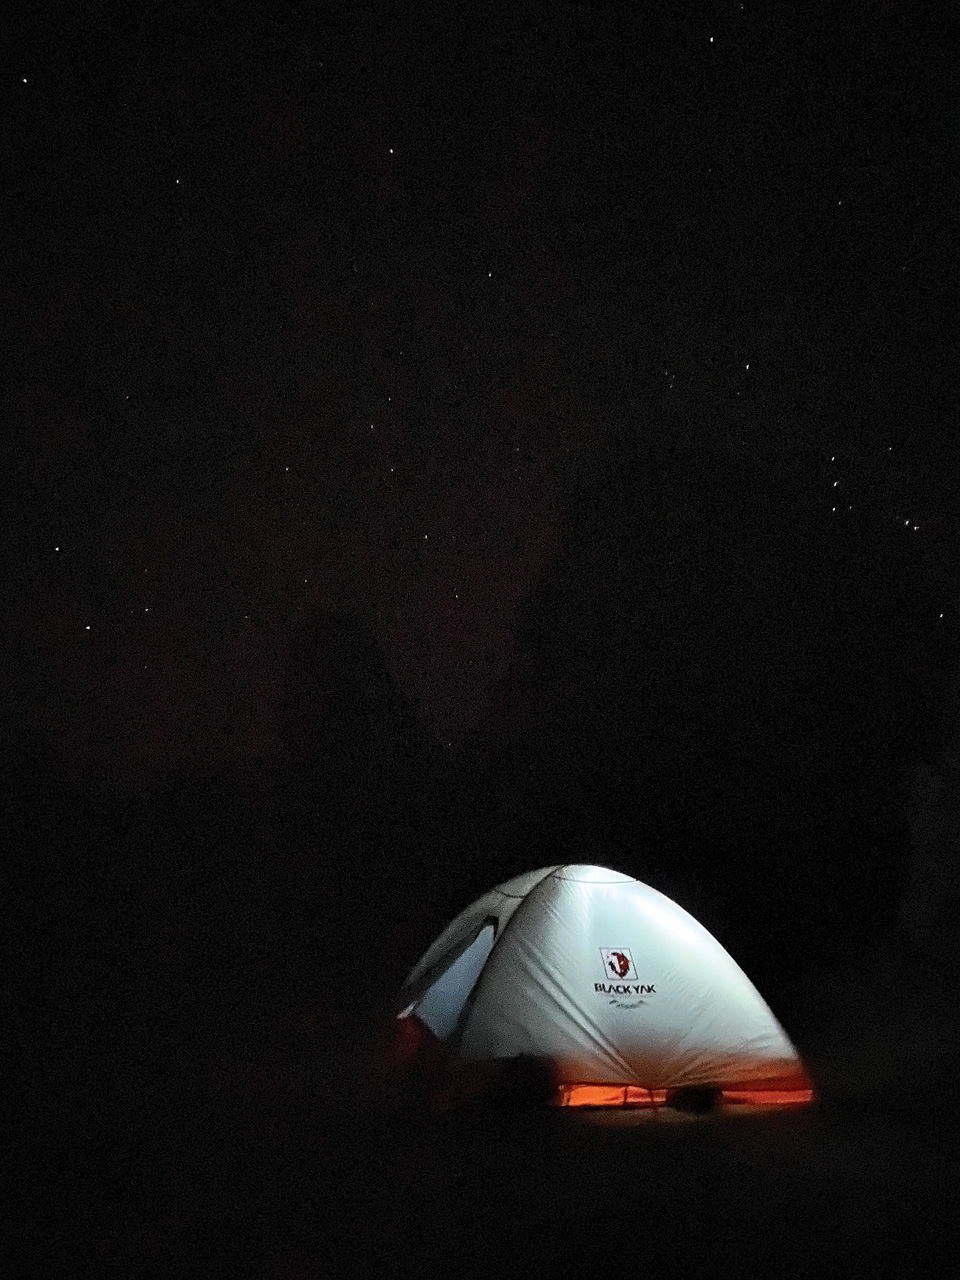 조슈아트리 국립공원에서의 야영. 노출 없이도 선명한 밤하늘별과 바위 그림자가 고혹적이다.